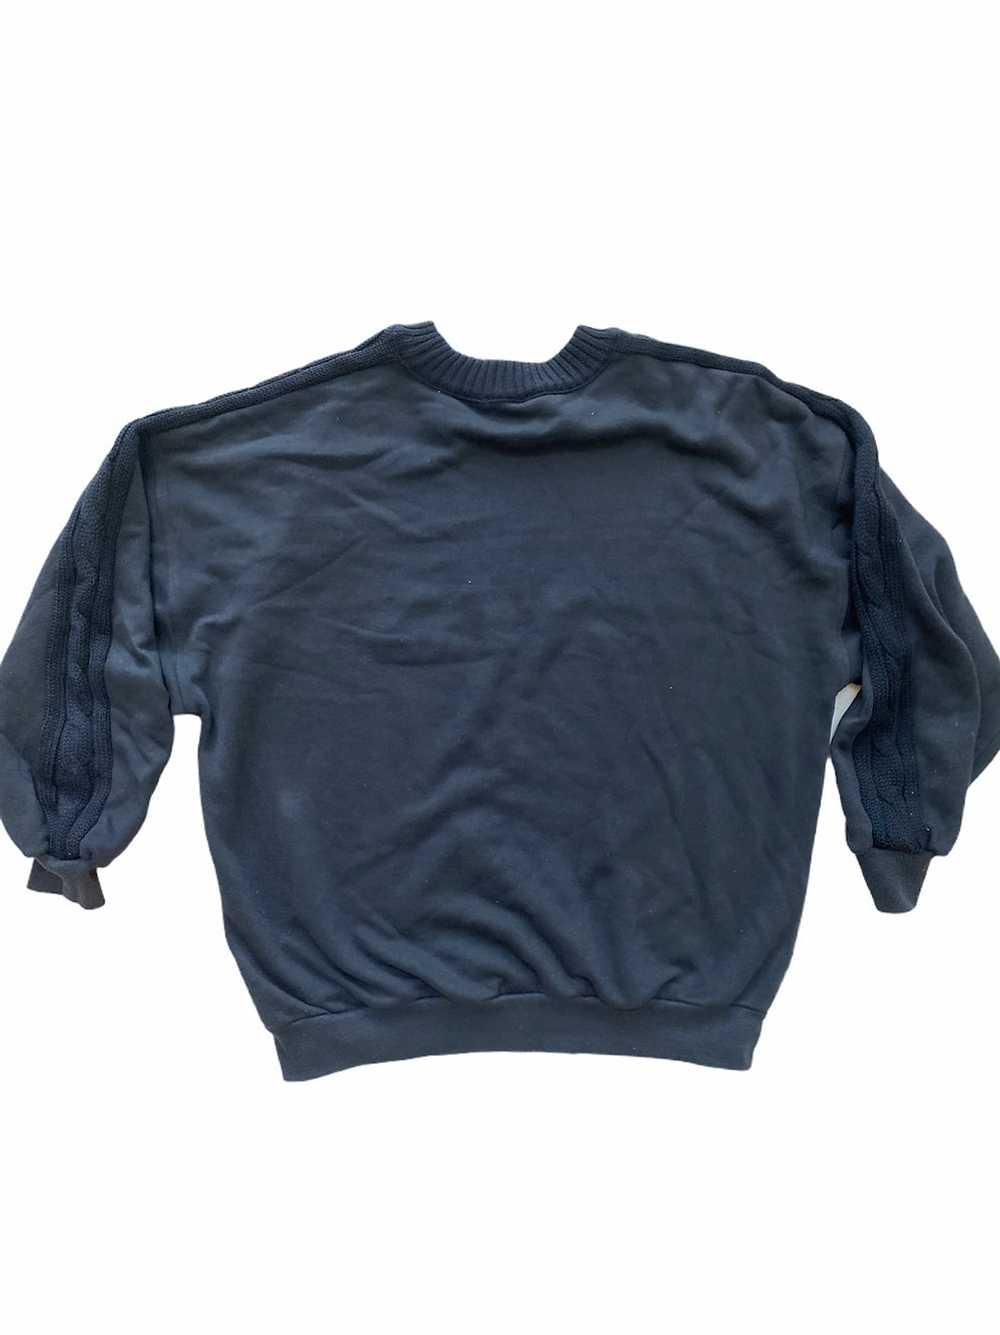 Rare Vintage 1980s Gucci Sweater (L) - image 2